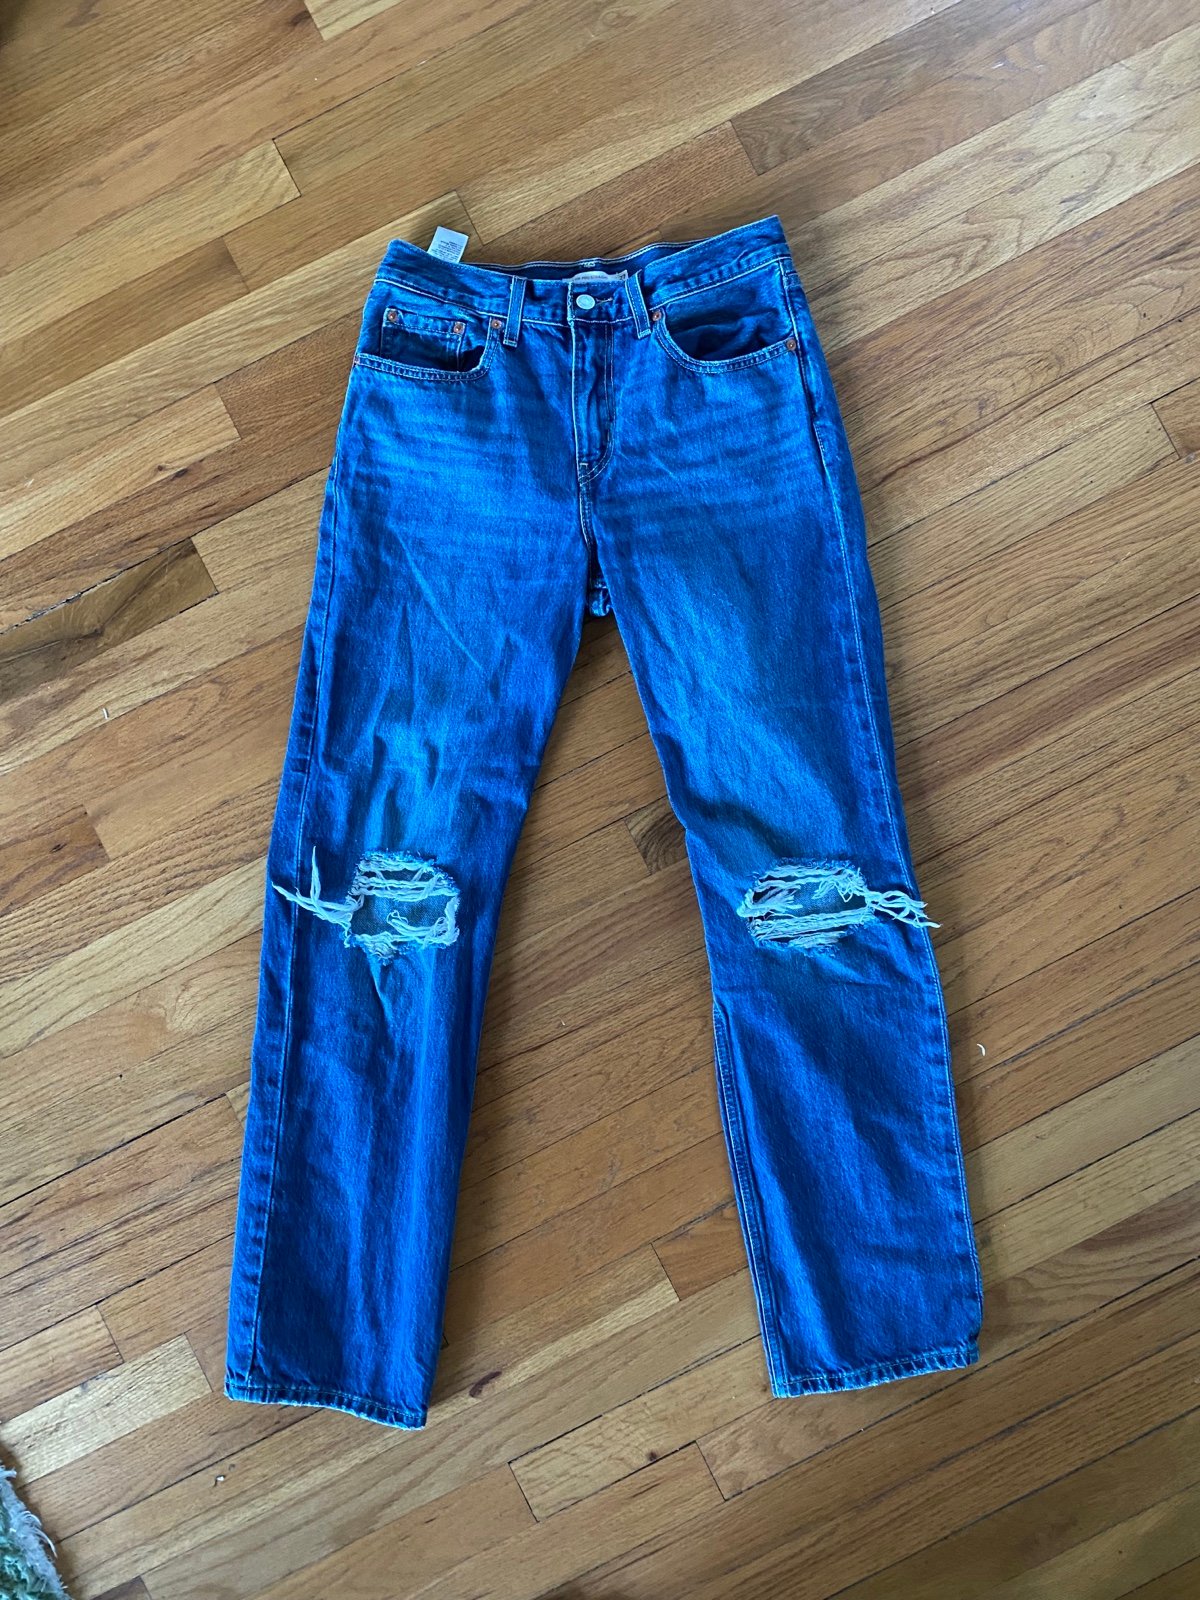 floor price Levis jeans sz 27 pncE78Zik High Quaity